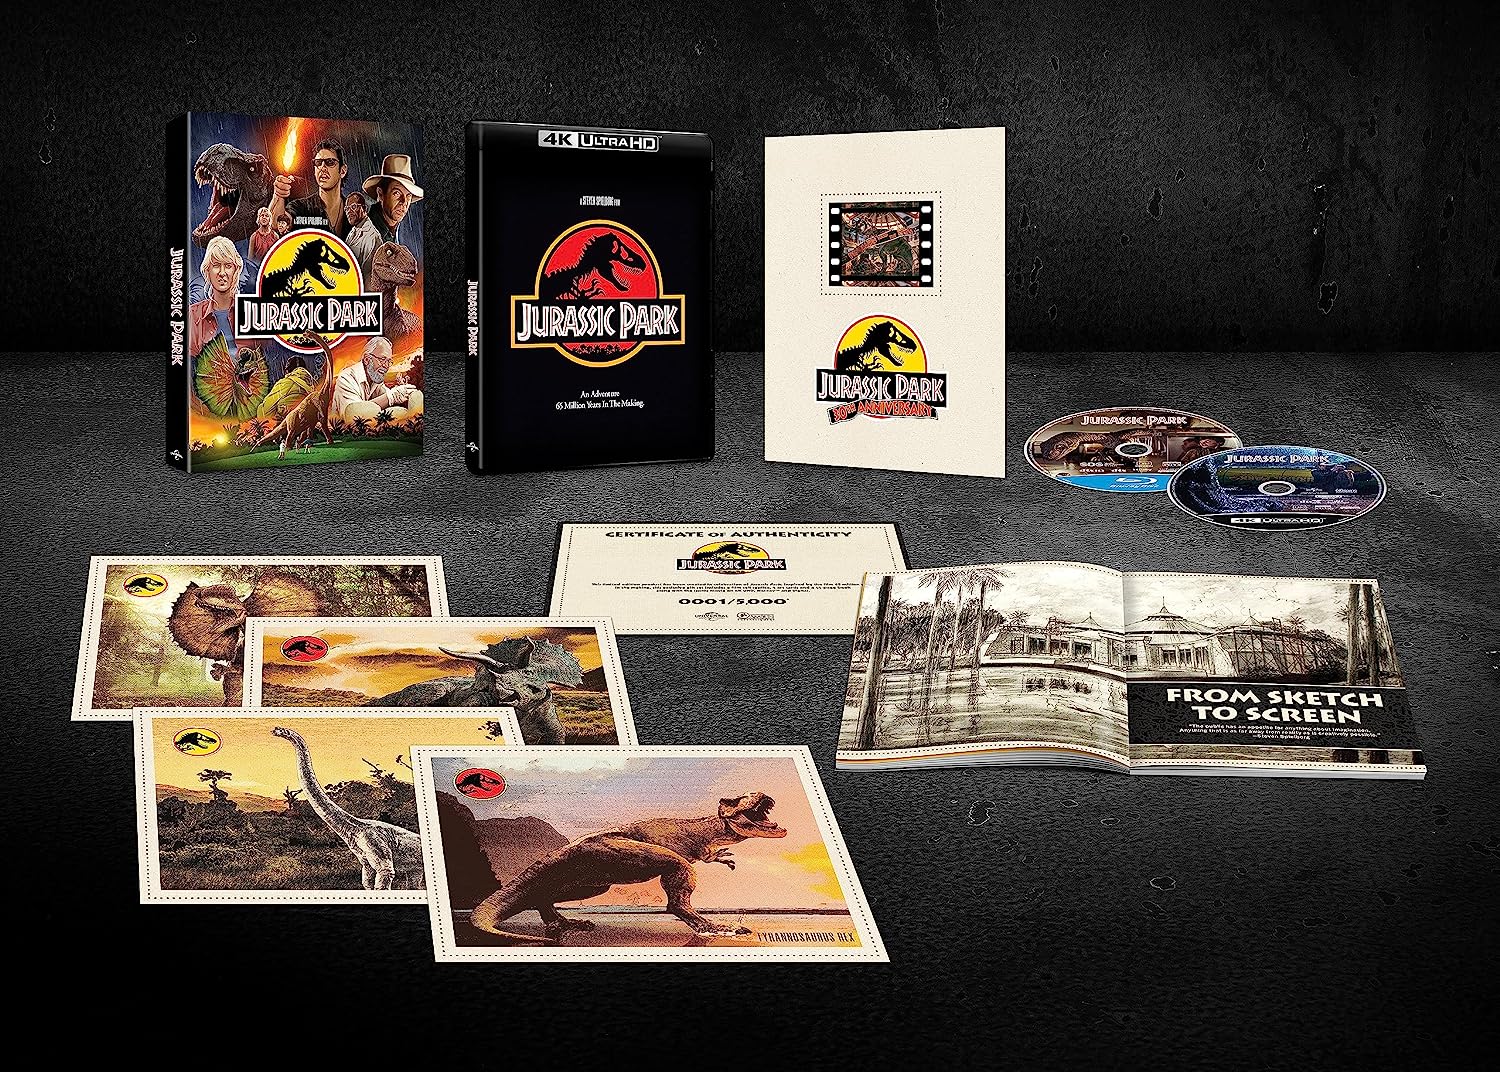 Парк Юрского периода (30th Anniversary Edition) (4K UHD + Blu-ray) Universal Essentials Collection